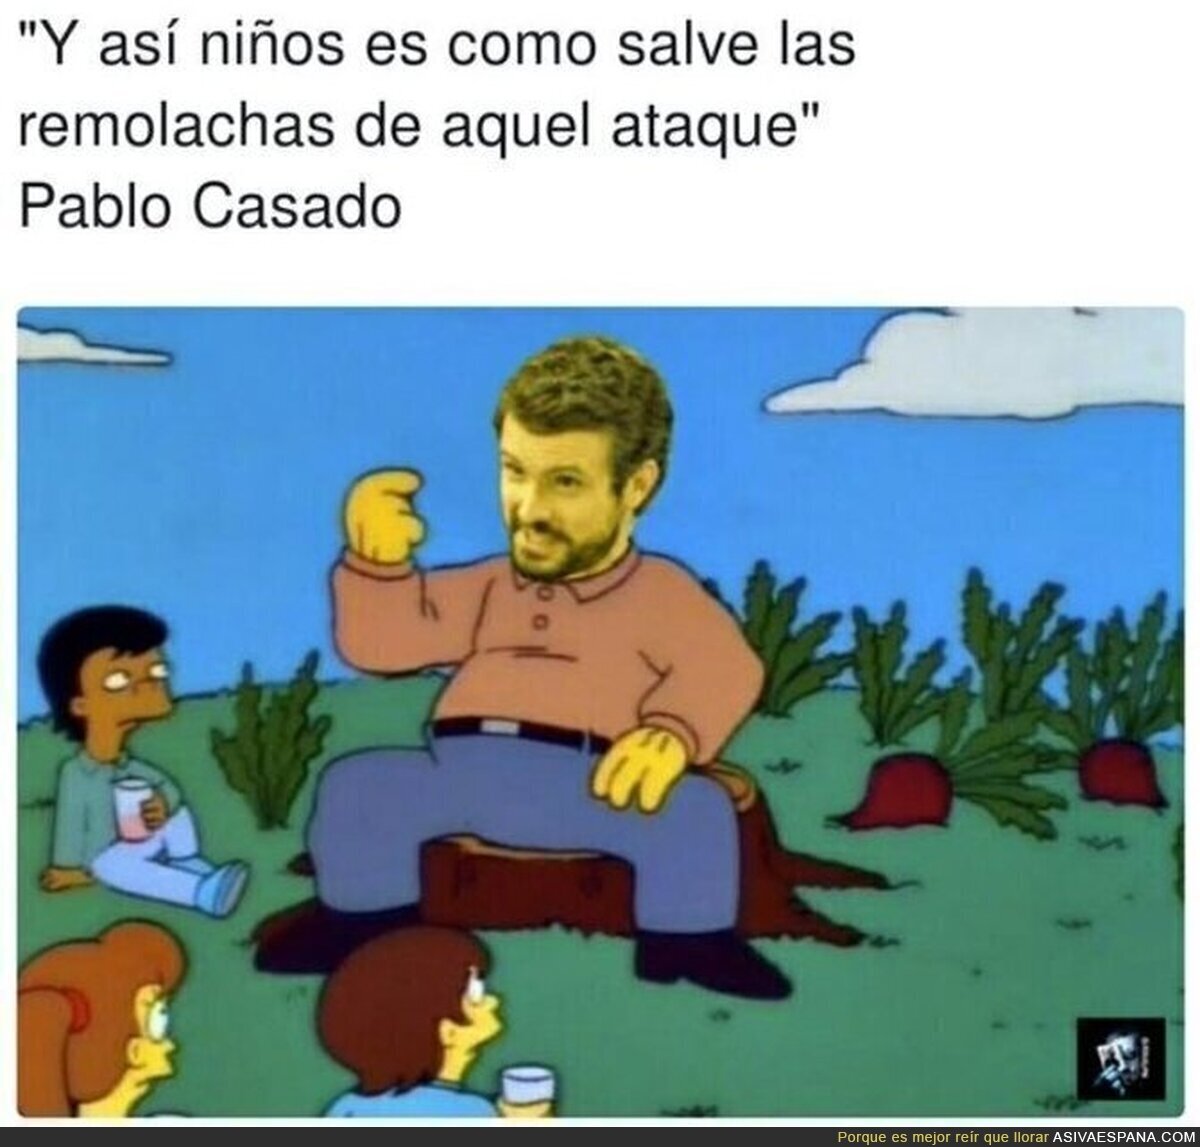 Pablo Casado el salvador